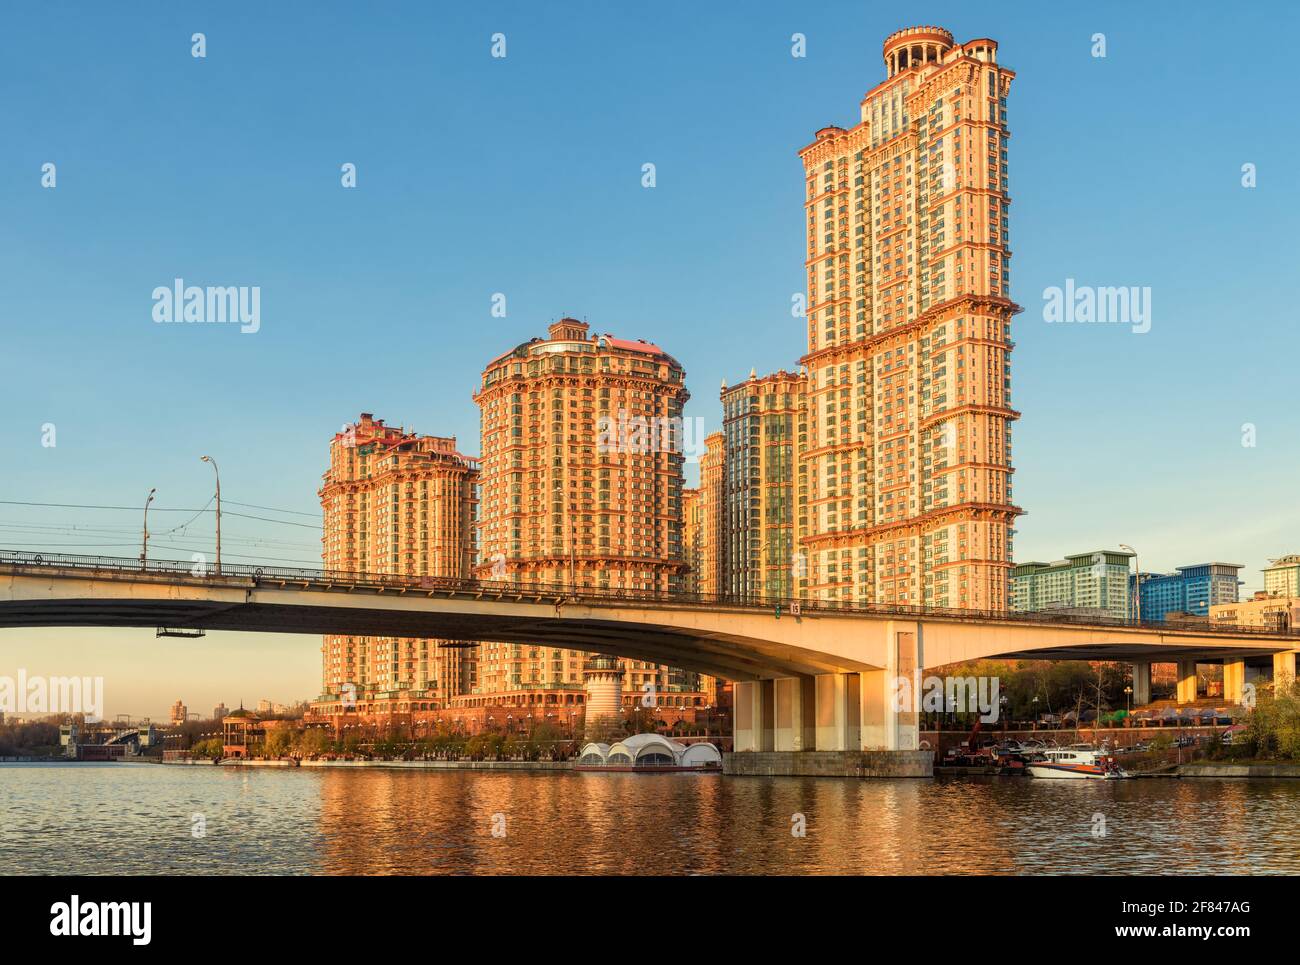 Edifici di Mosca in luci del tramonto, Russia. Complesso residenziale Alye Parusa sul fiume Moskva. Scenario di grattacieli e Stroginsky Bridge a Mosca NOR Foto Stock